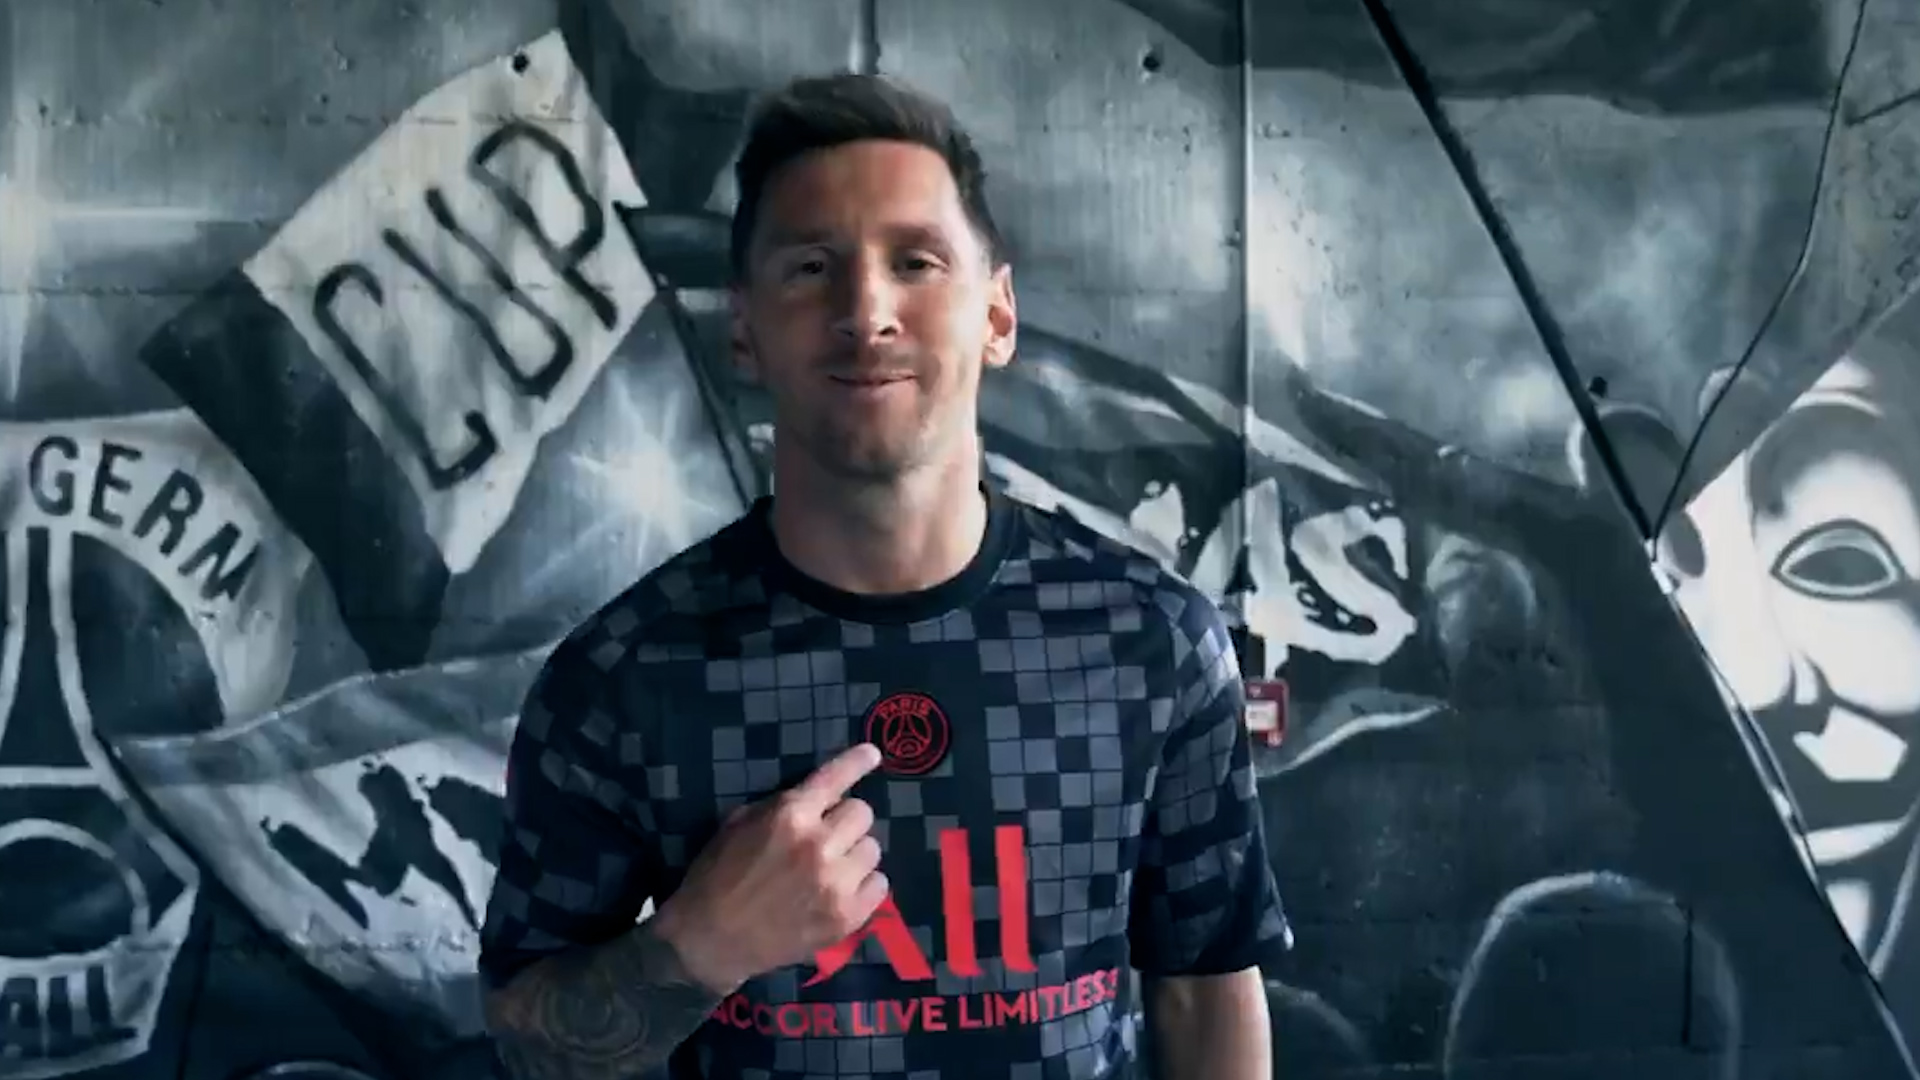 Furor por la remera Vuitton que usó Messi: cuánto cuesta y por qué afirman  que tiene un mensaje del campeón al mundo – Revista Para Ti